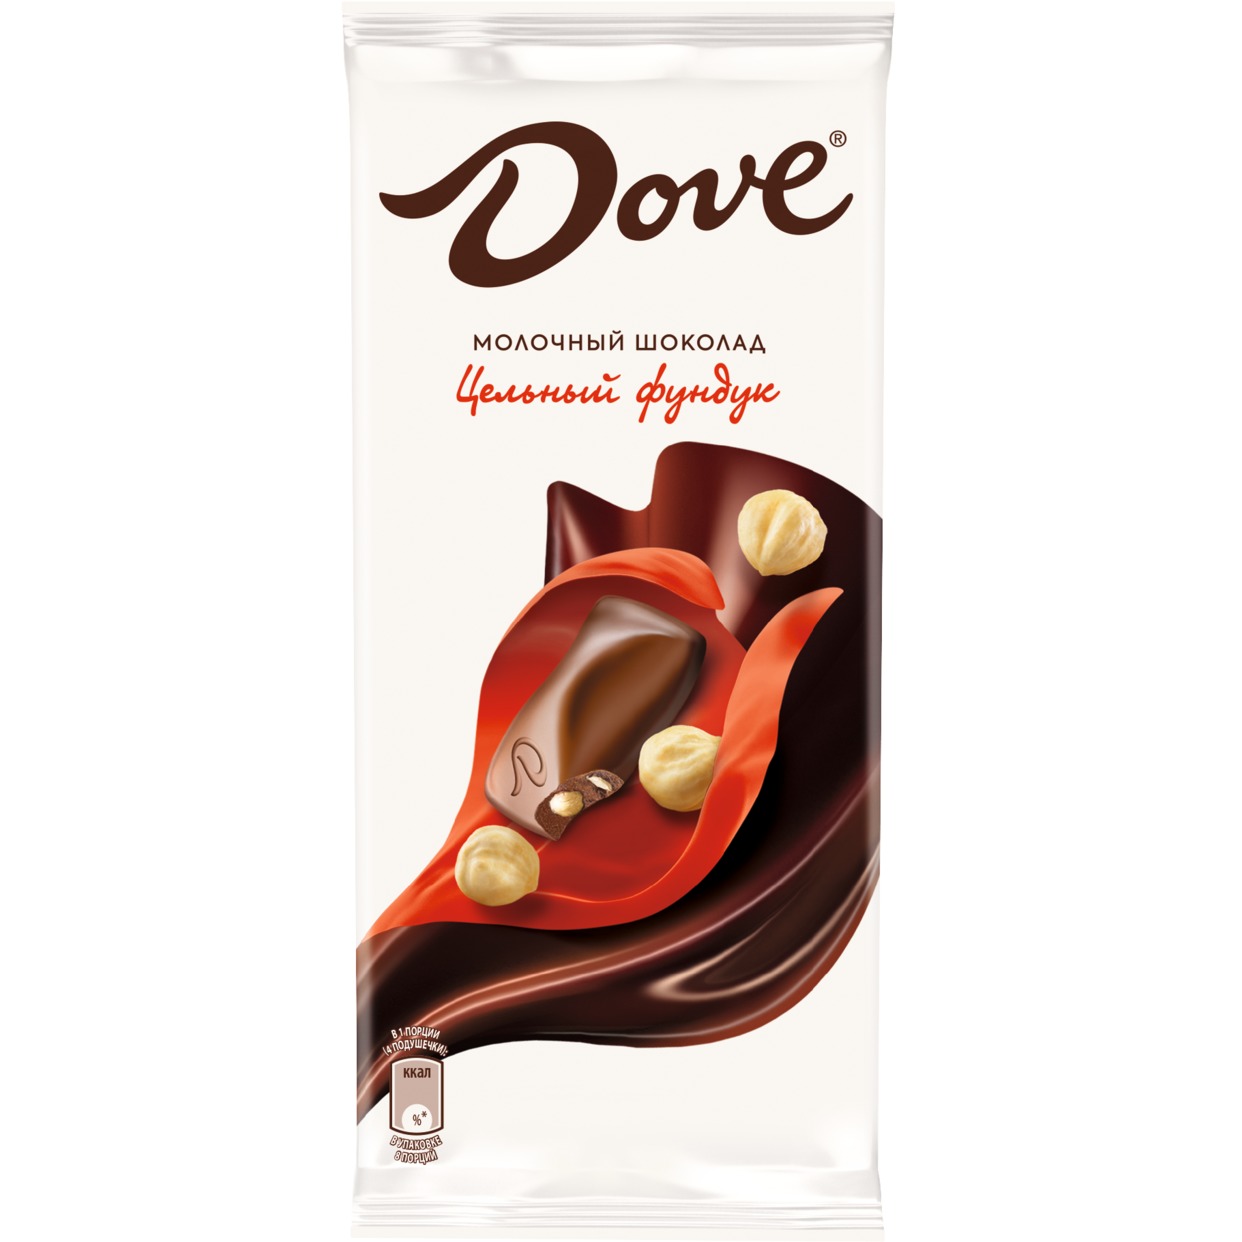 Шоколад "Dove" Молочный с Цельным Фундуком 90г